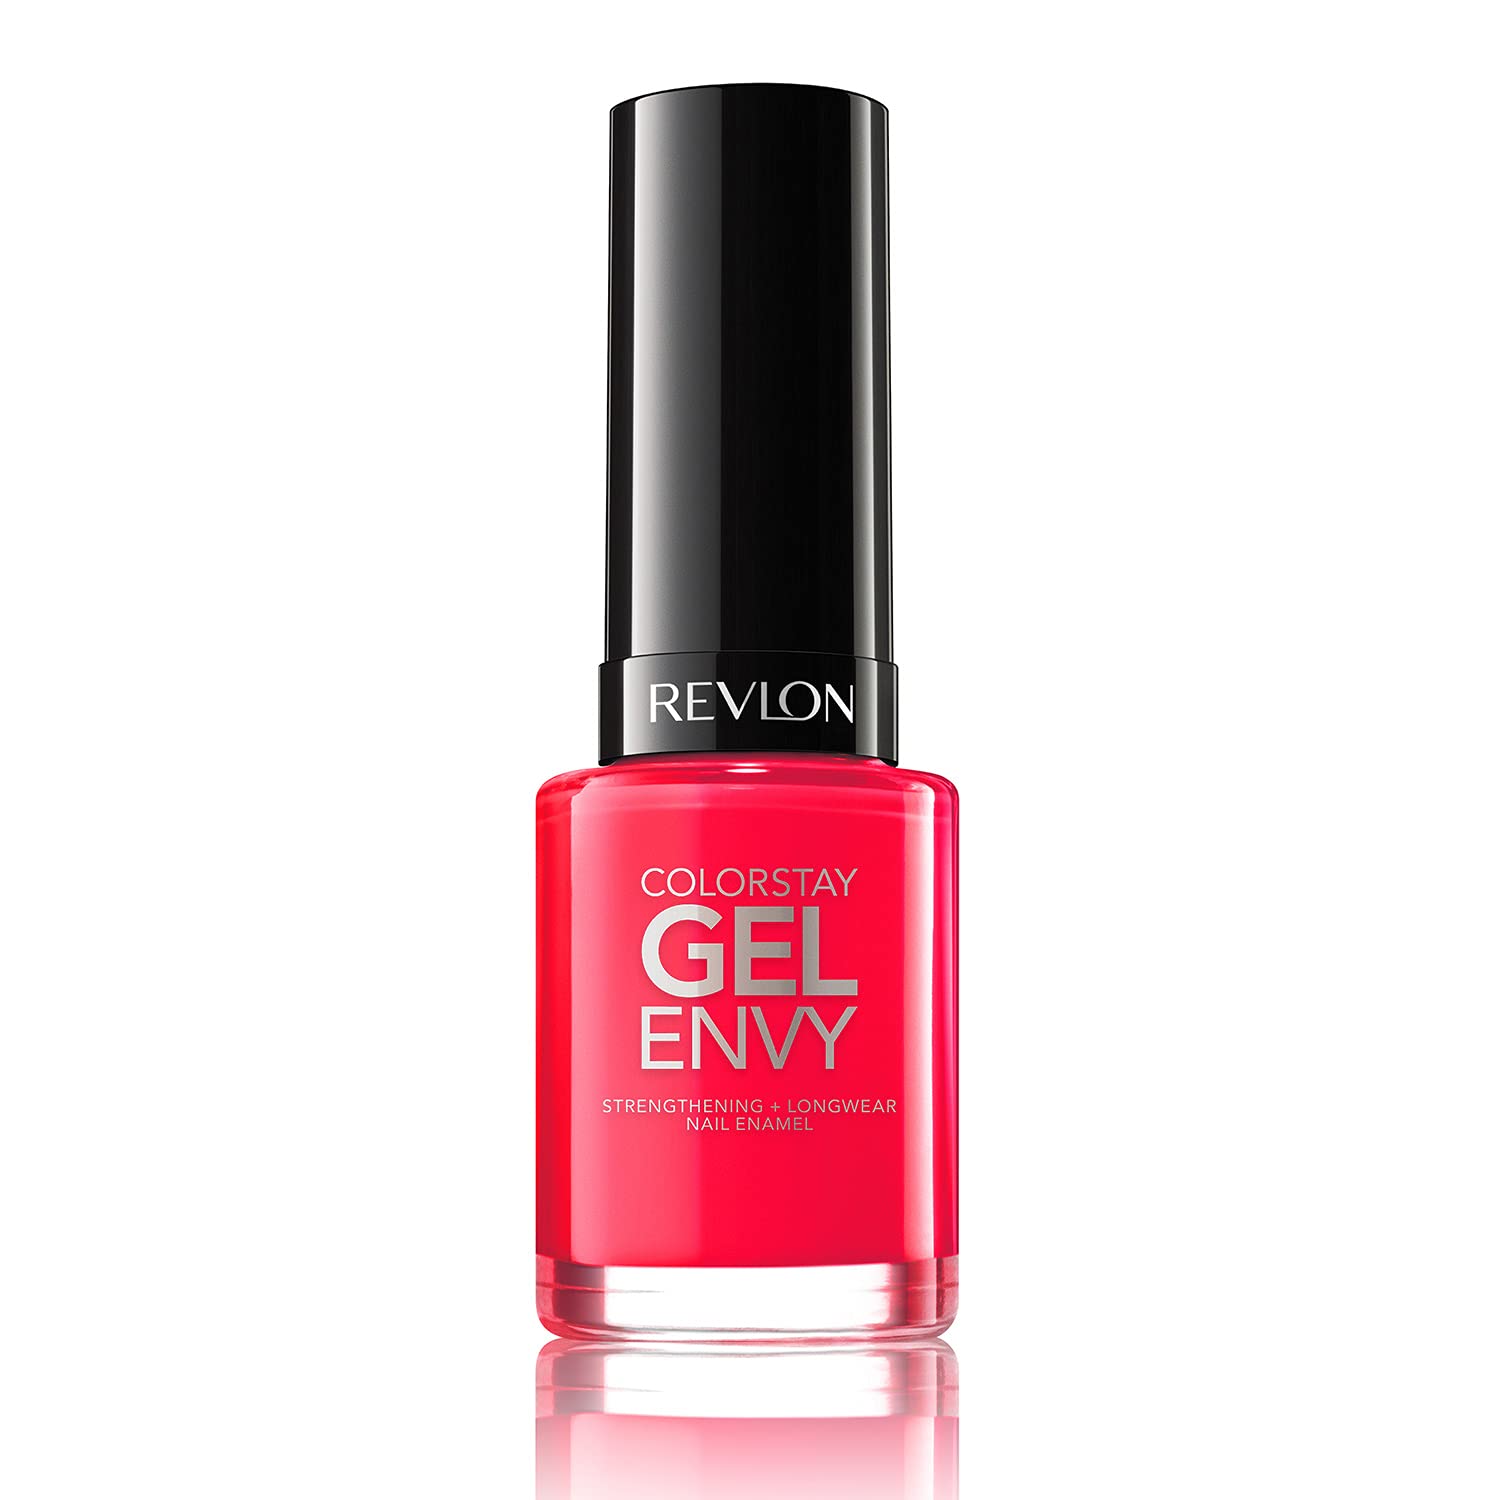 0.4-Oz Revlon ColorStay Gel Envy Longwear Nail Polish (Pink) $1.95 w/ S&S + Free S&H w/ Prime or $25+